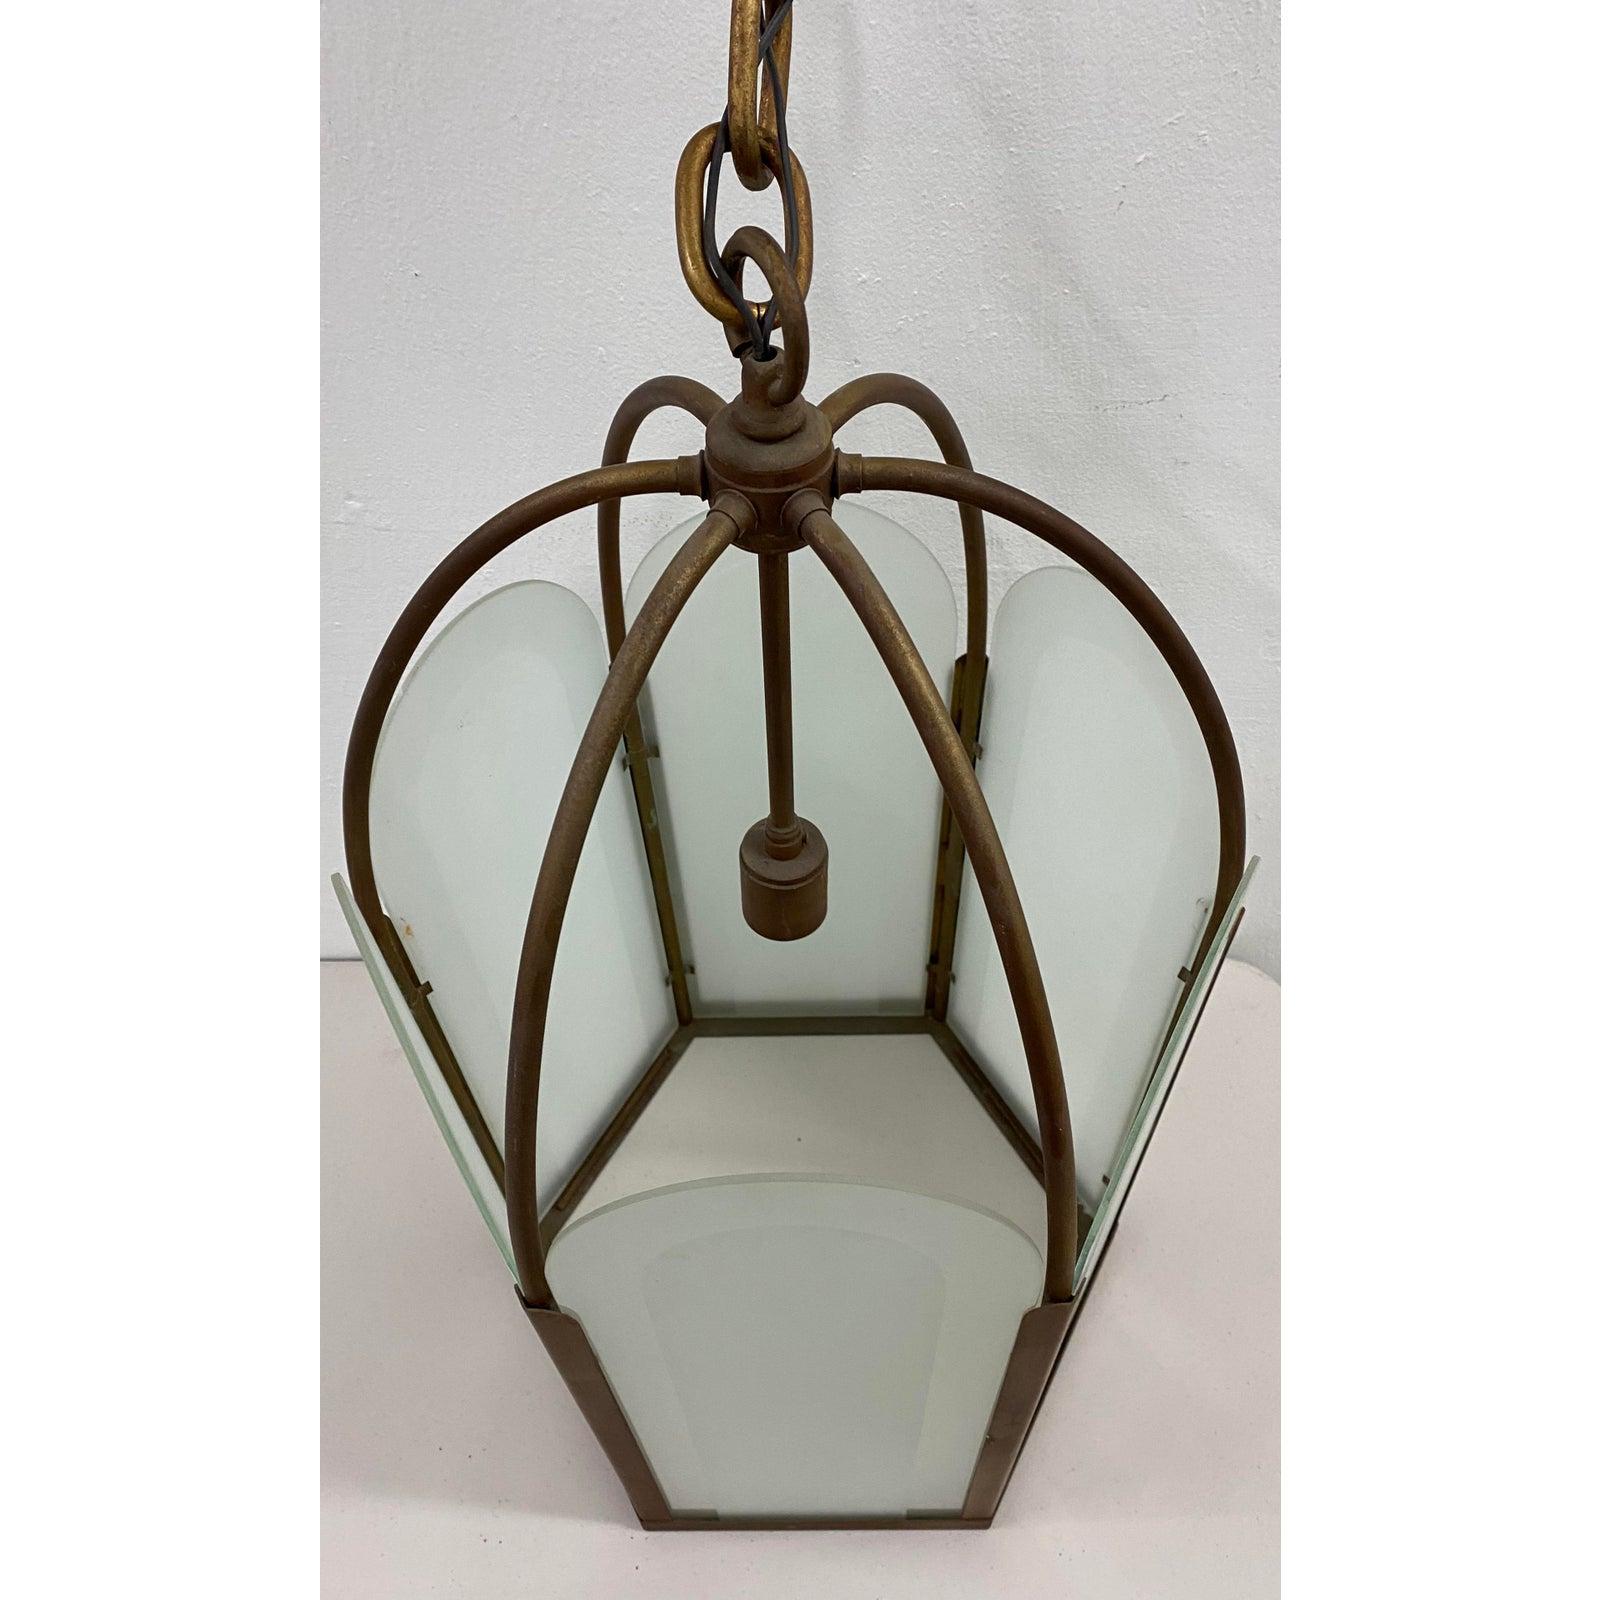 Französischer Deko-Kronleuchter aus Bronze und Milchglas mit sechseckiger Pendelleuchte, um 1920

Wunderschöne Pendelleuchte. Sechs Seiten. Jede Milchglasscheibe lässt sich hochklappen, so dass die Glühbirne leicht ausgewechselt werden